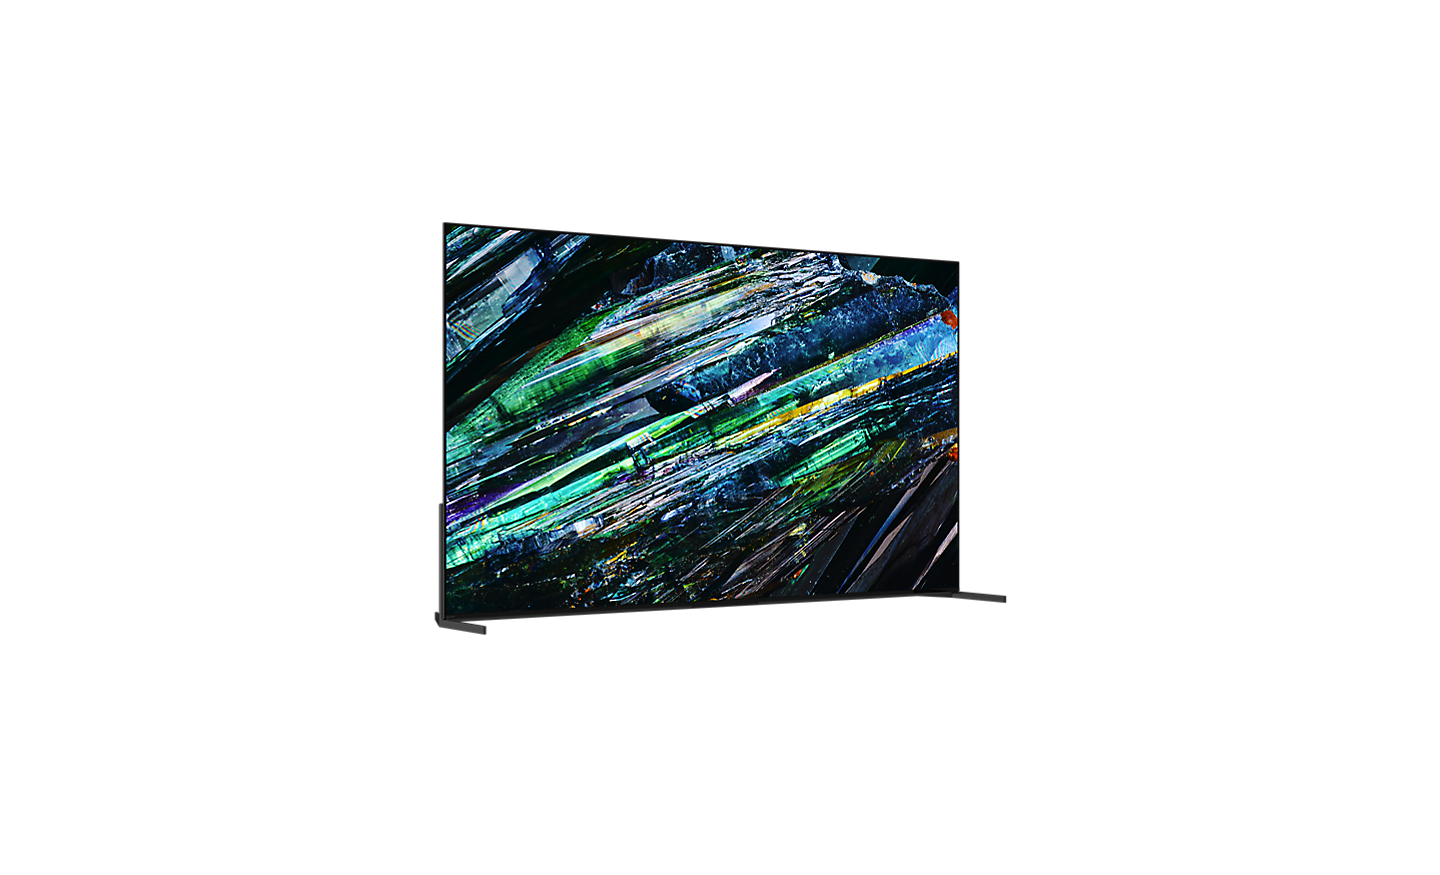 Visor 360 deslizable de la serie A95L que muestra una vista 360° de la televisión